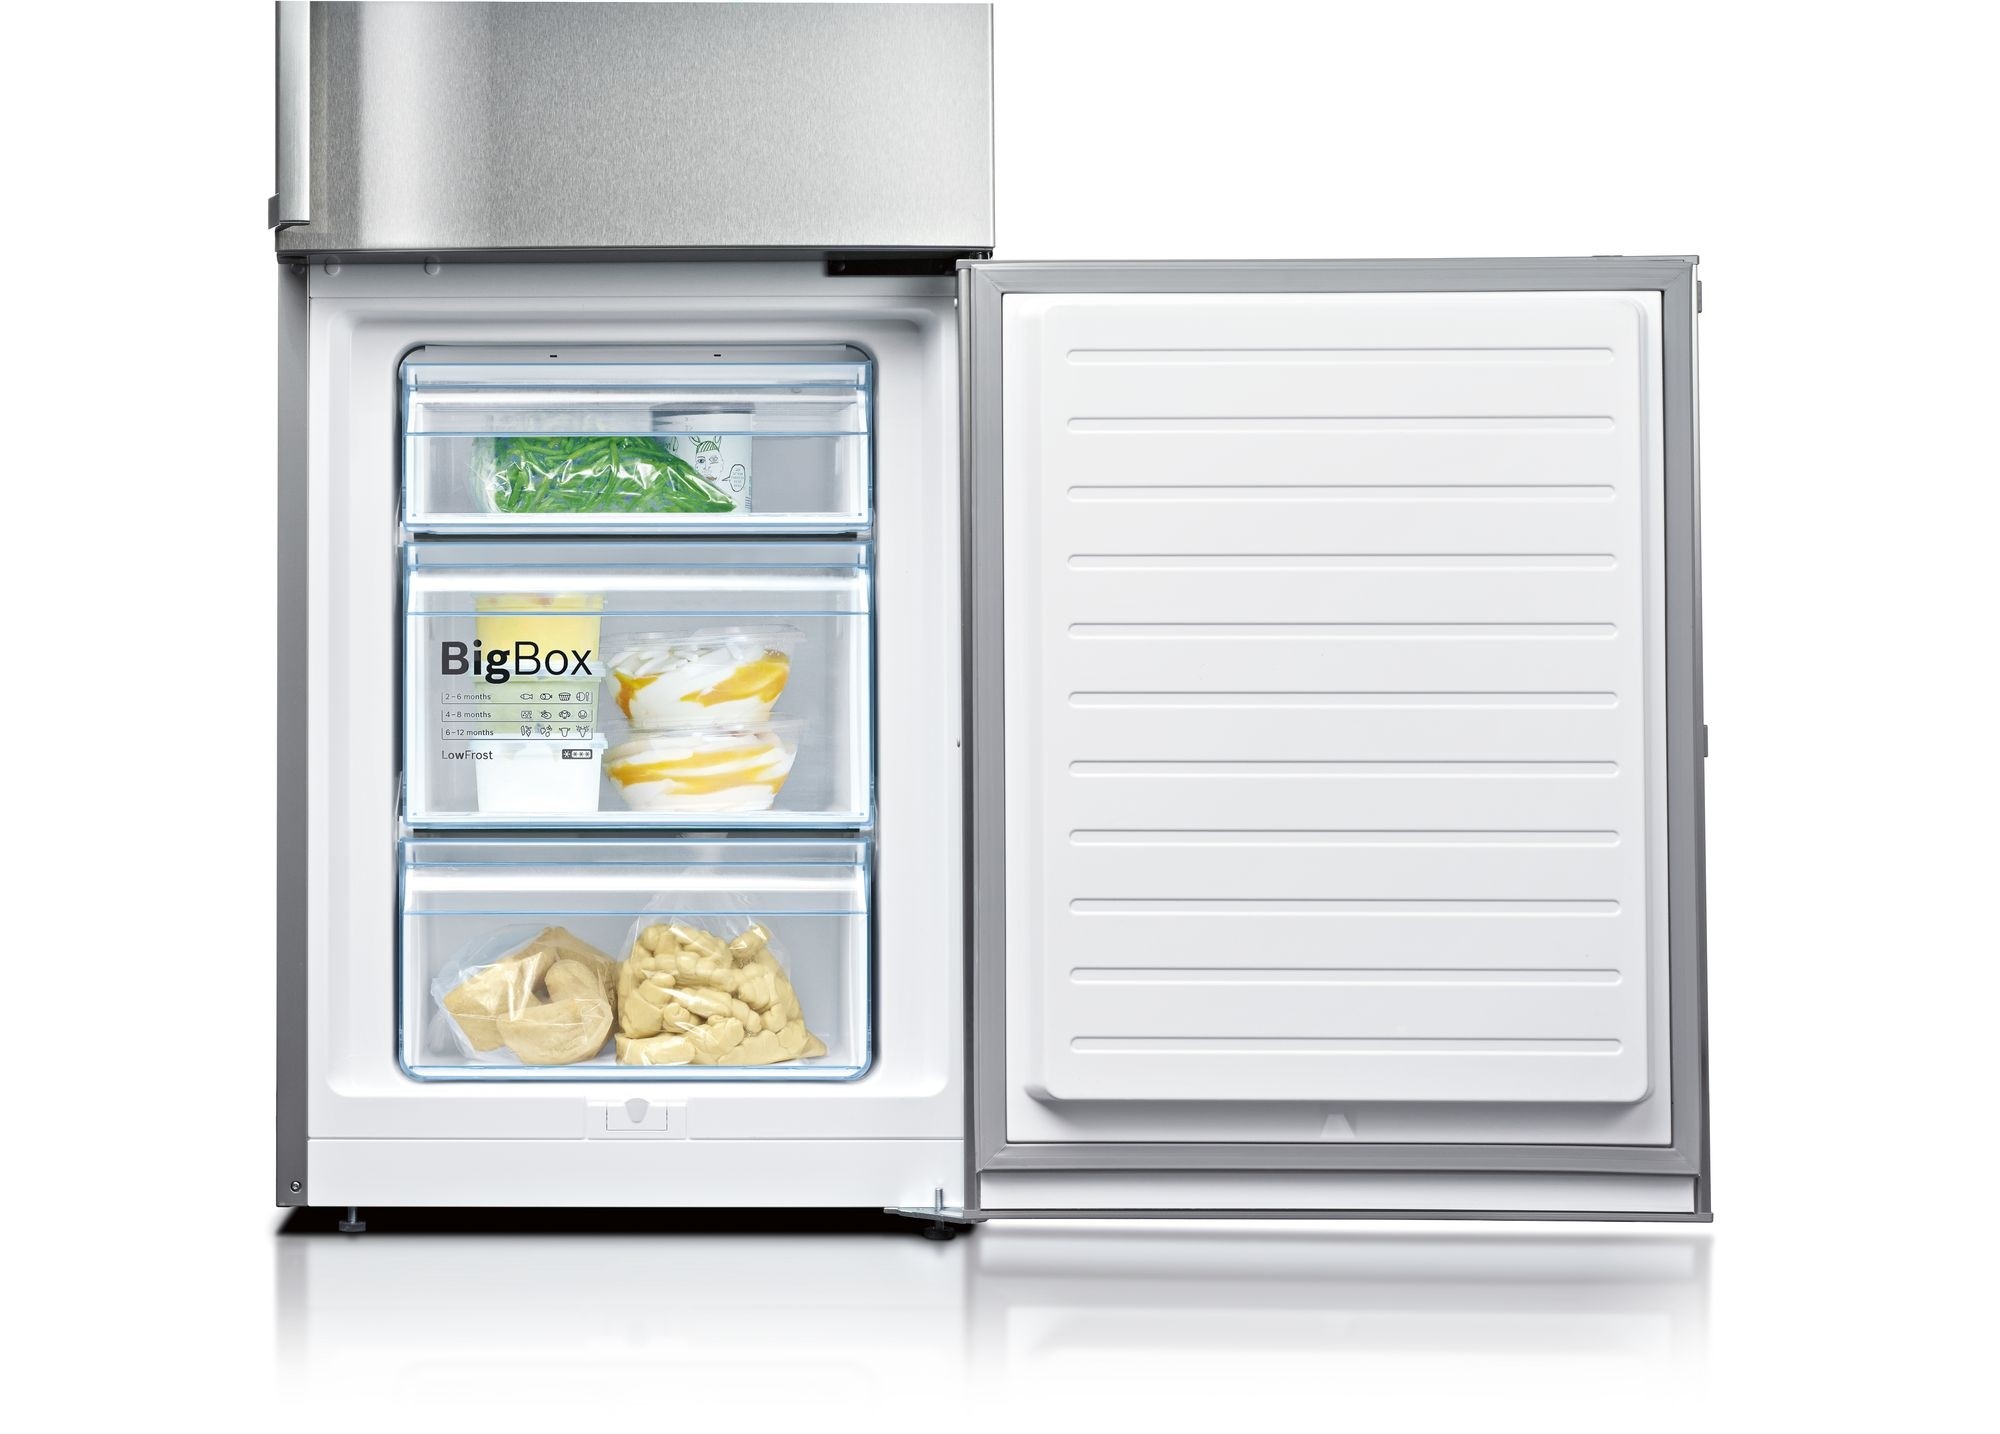 Bi 40. Холодильник с полкой для заморозки пельменей. Холодильник Bosch Diotronic.